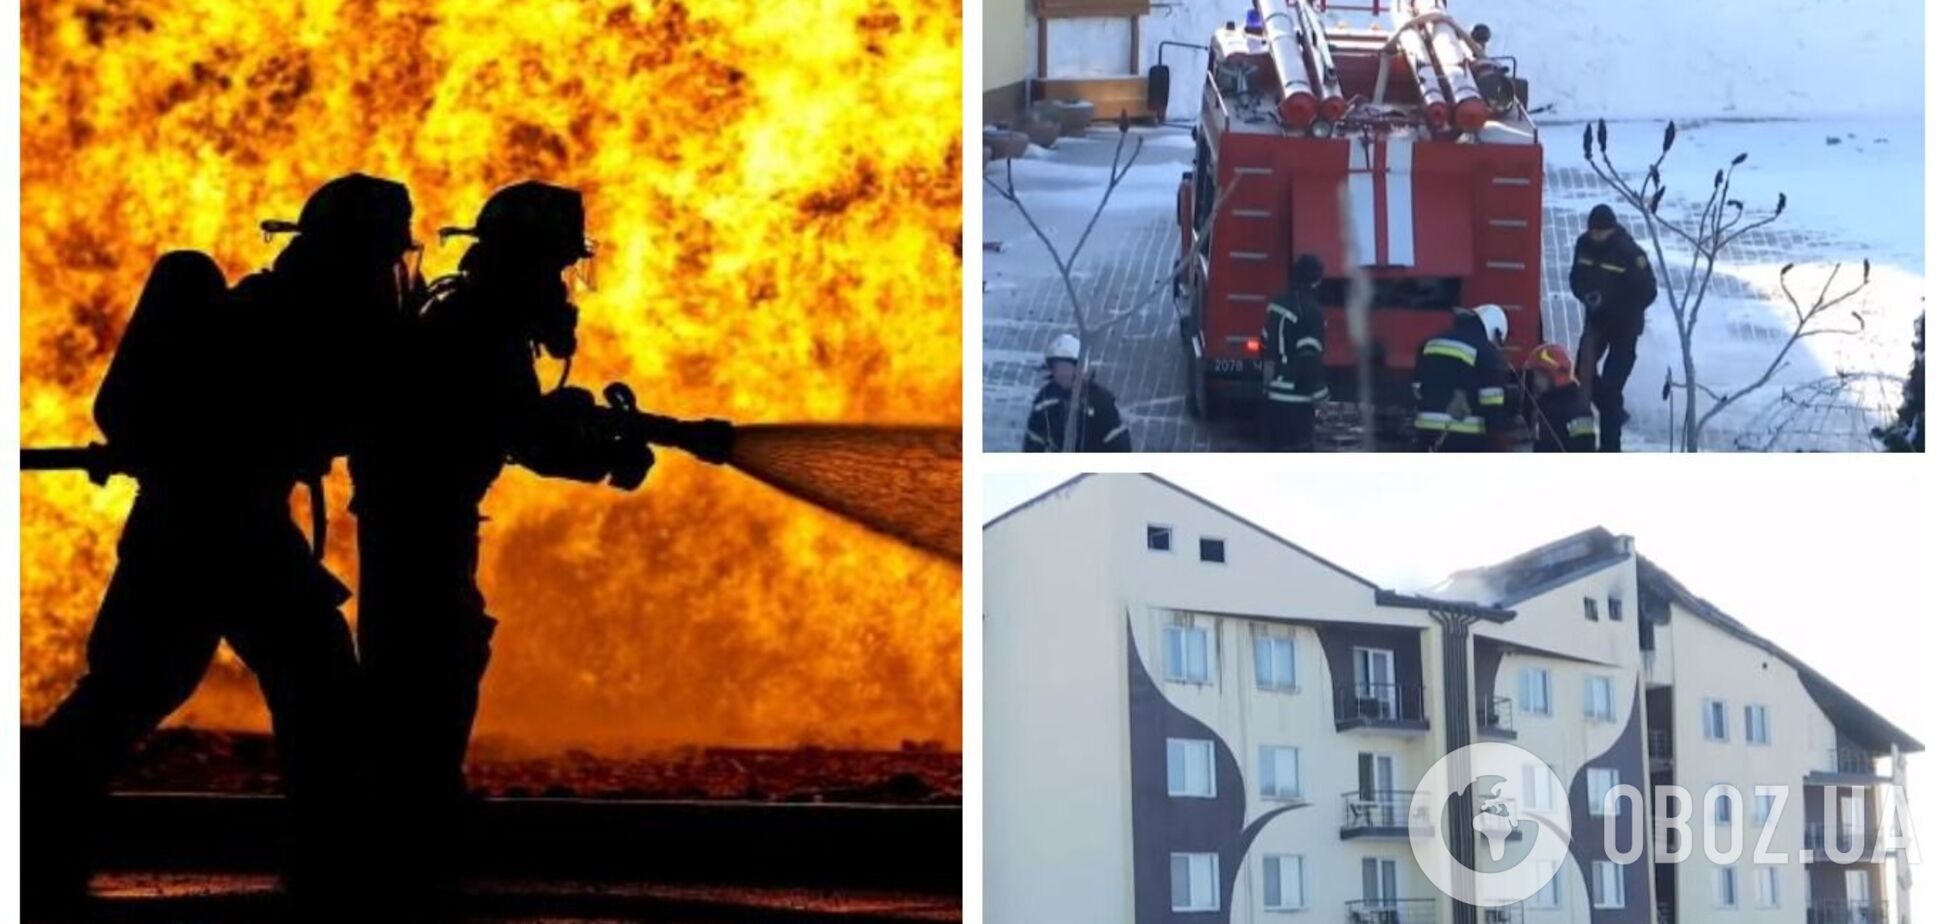 Стрибали із шостого поверху: з'явилися подробиці щодо стану постраждалих унаслідок пожежі в готелі під Вінницею. Відео